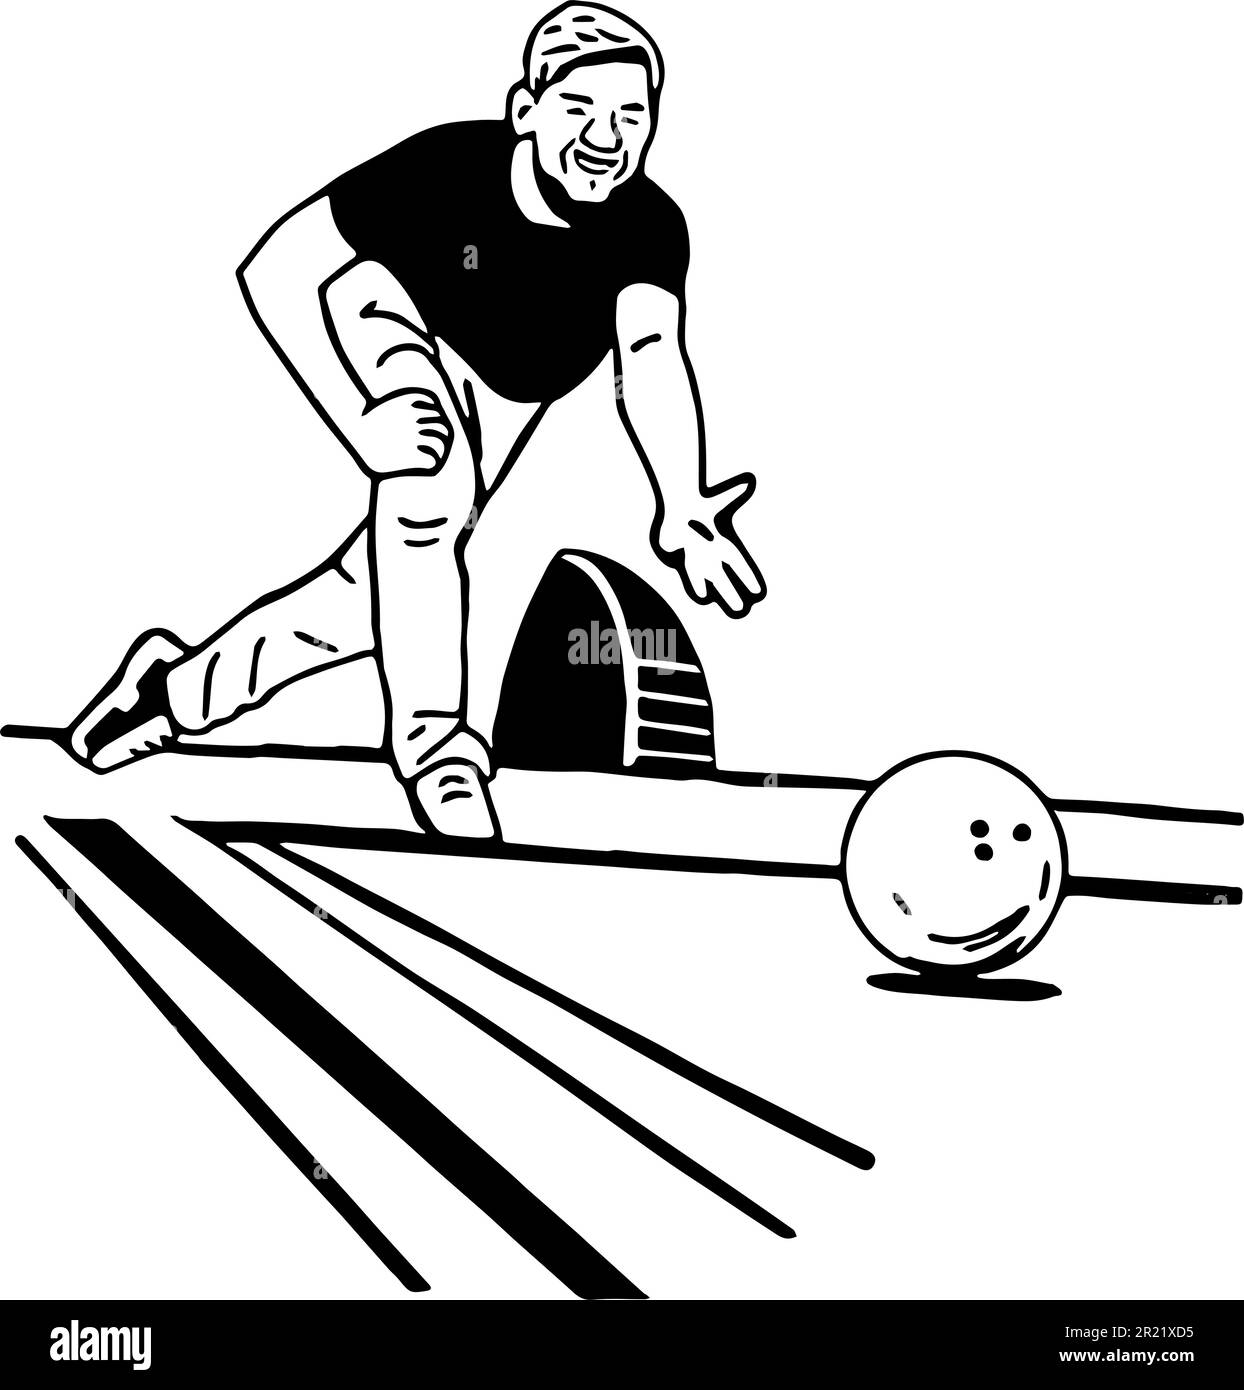 Ein Mann, der auf einer Bowlingbahn Bowling spielt. Vektorsymbol der Konturen. Stock Vektor